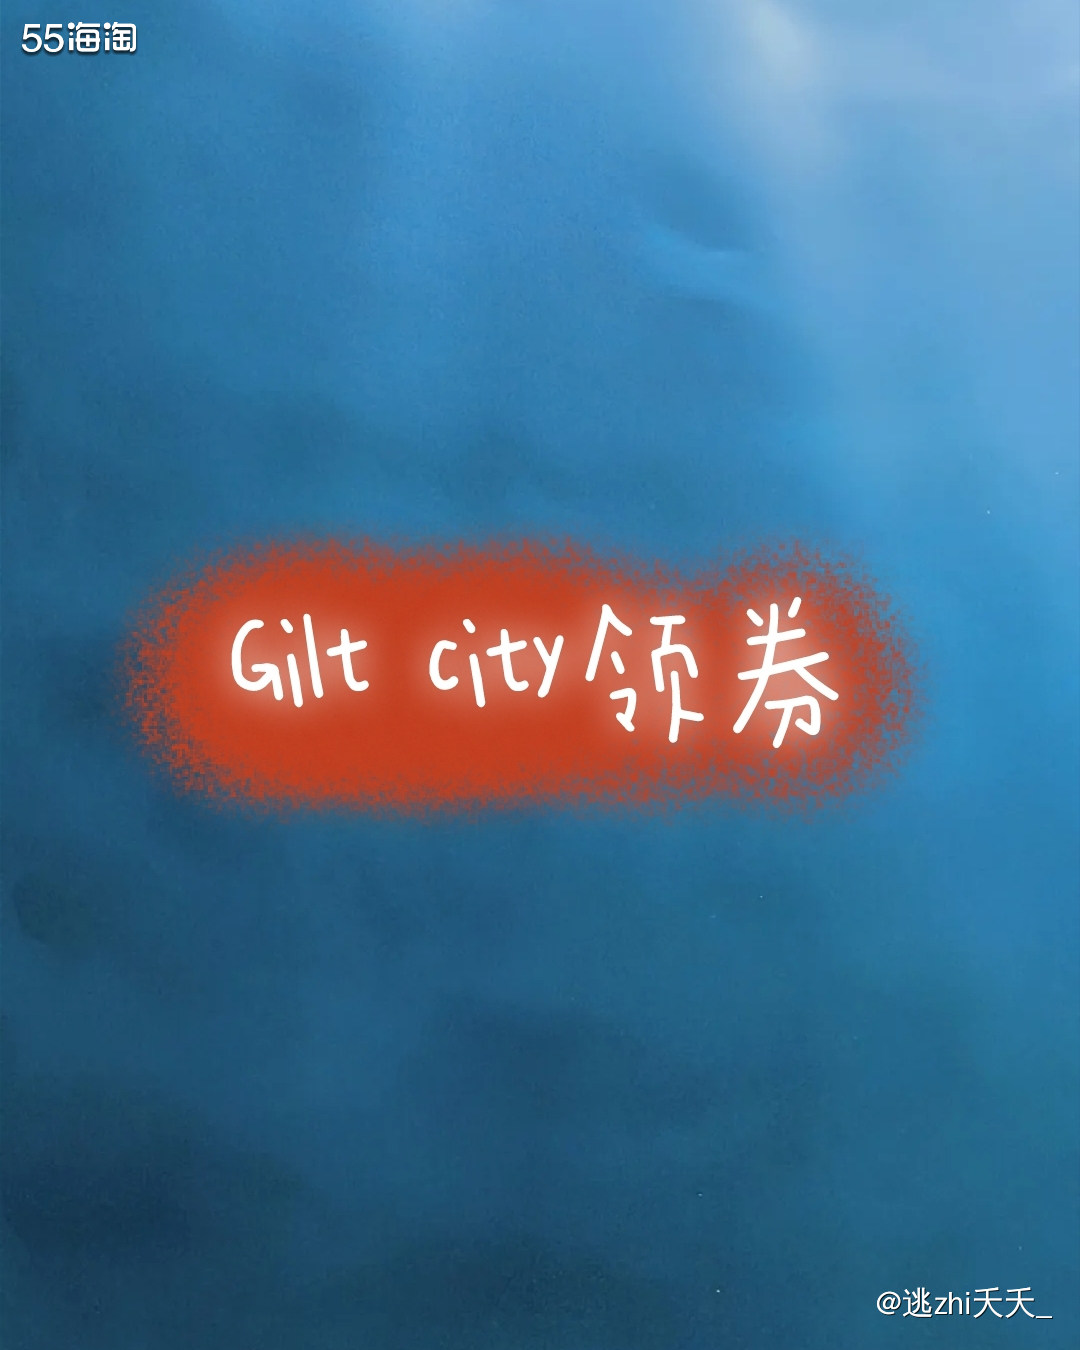 #海淘经验盒子#Gilt city领券  💙对于Gilt 